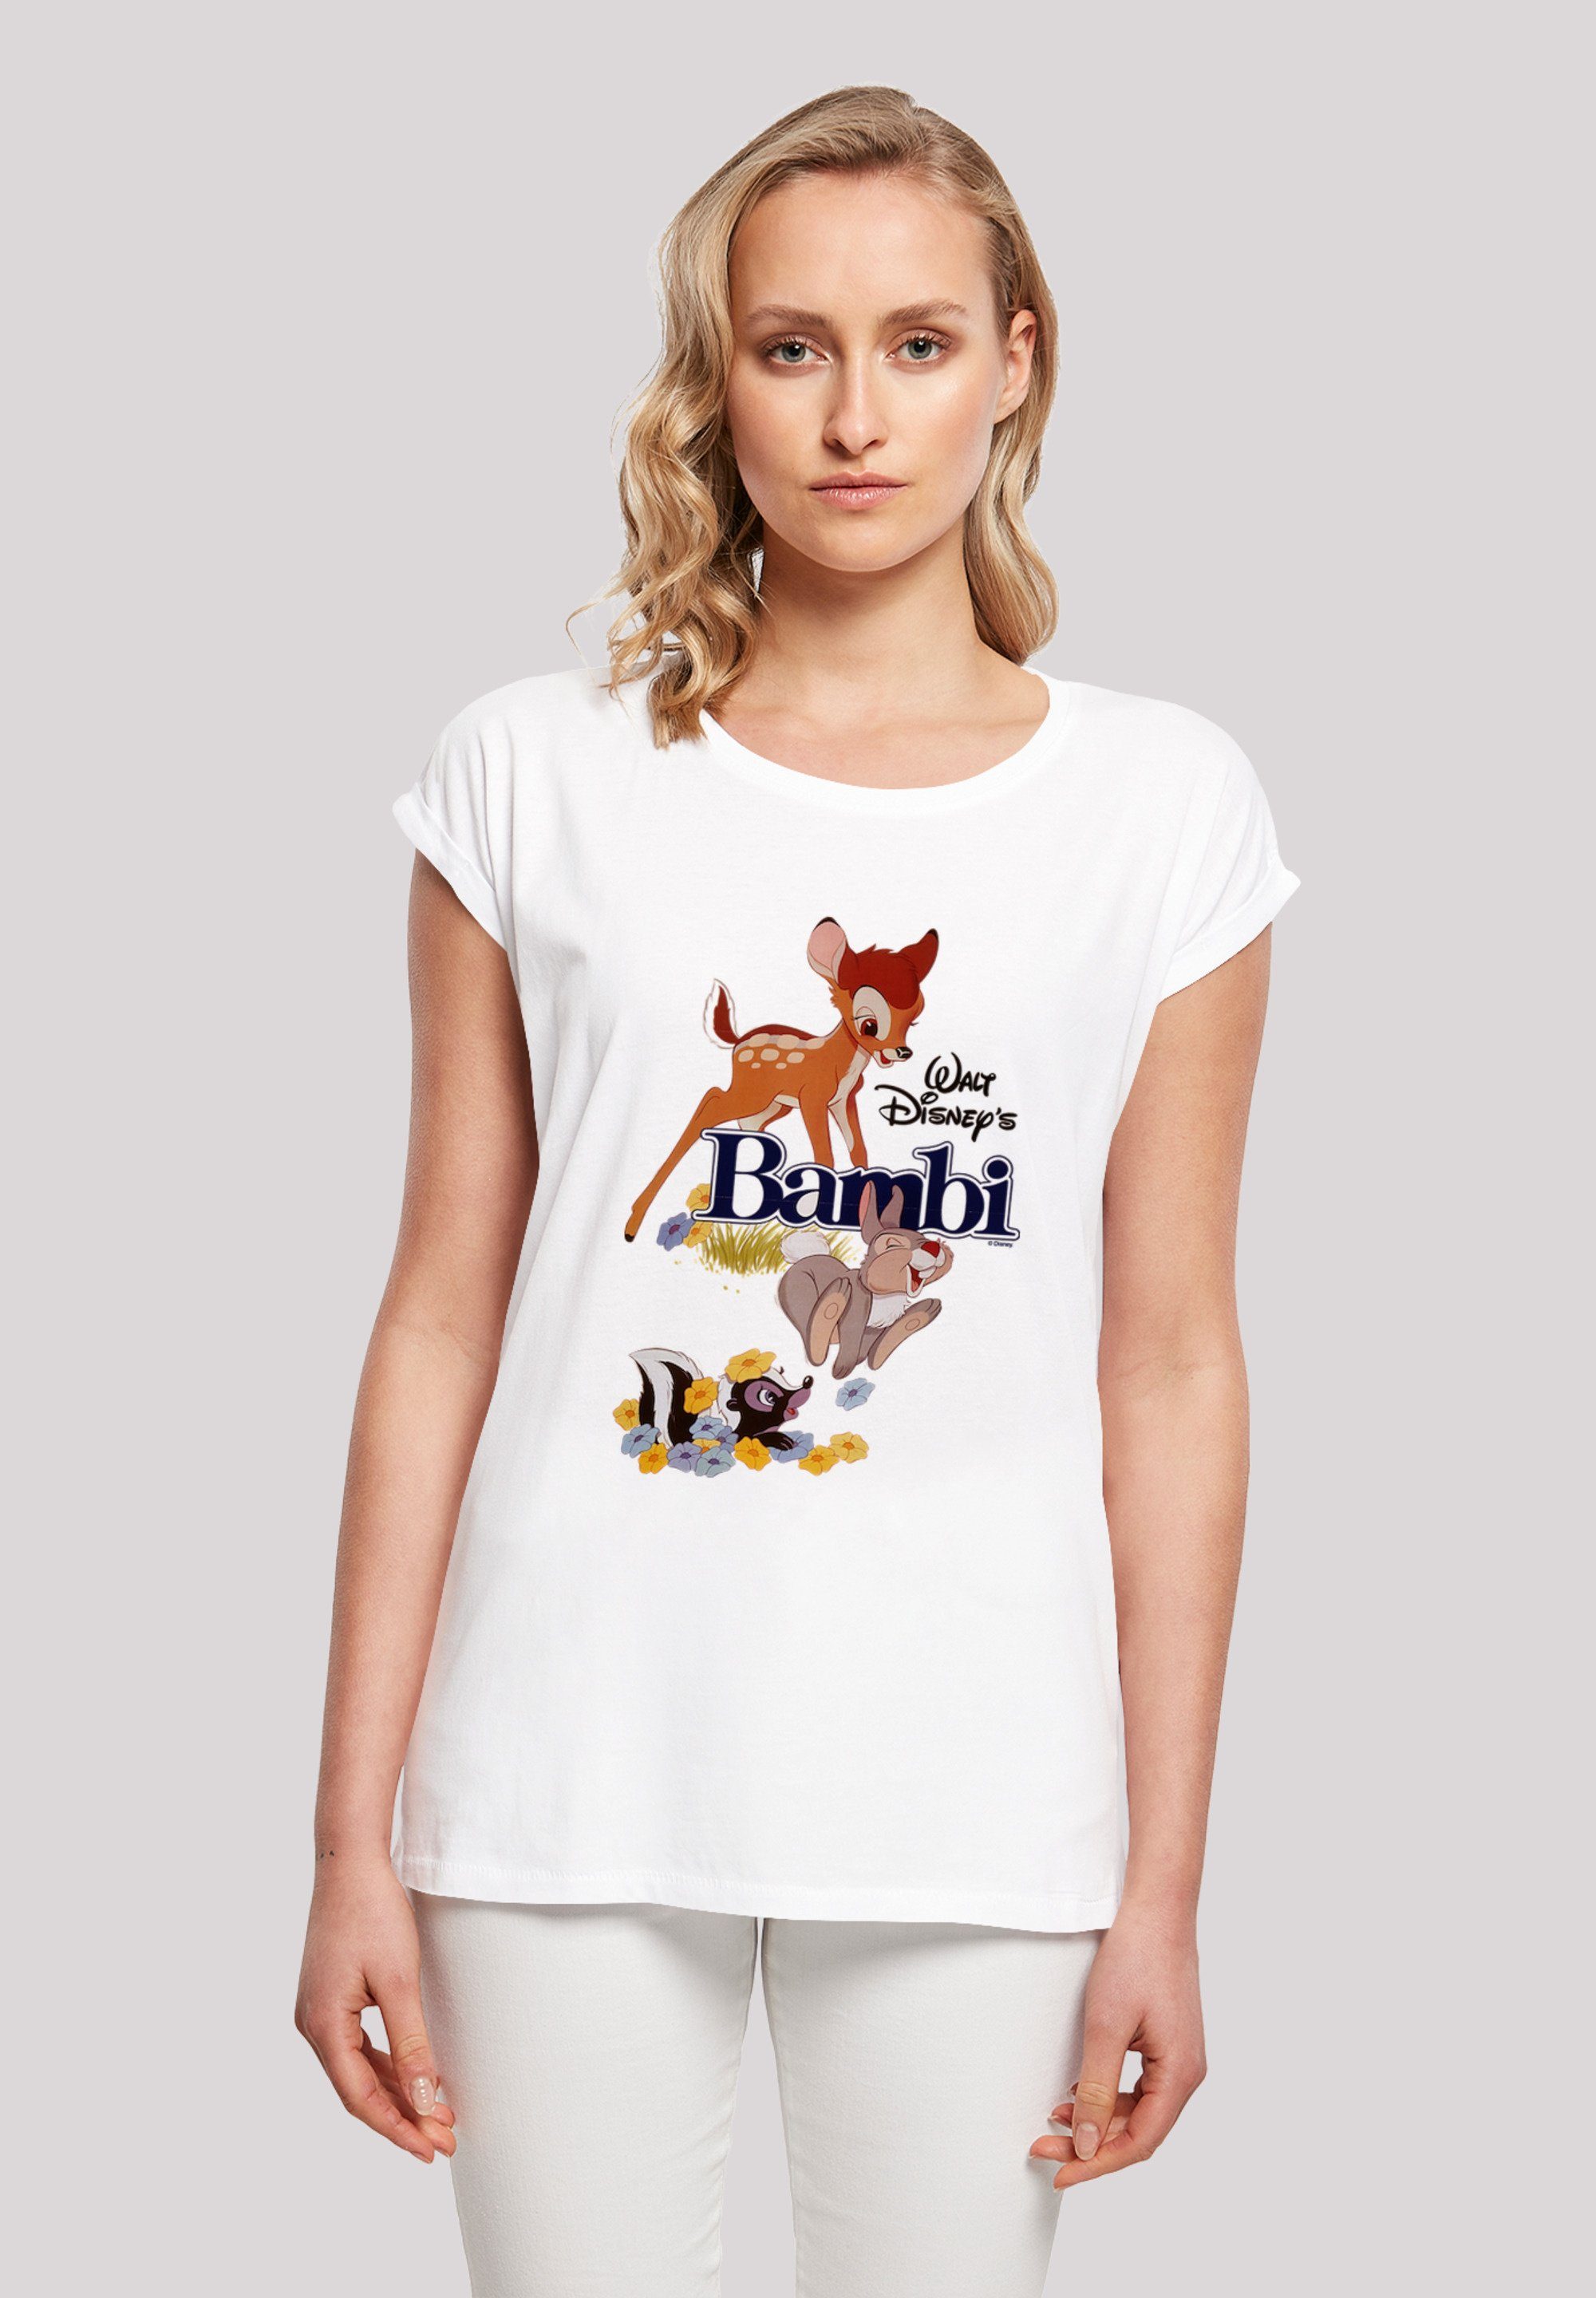 F4NT4STIC T-Shirt Bambi Poster Print, Disney Offiziell T-Shirt lizenziertes